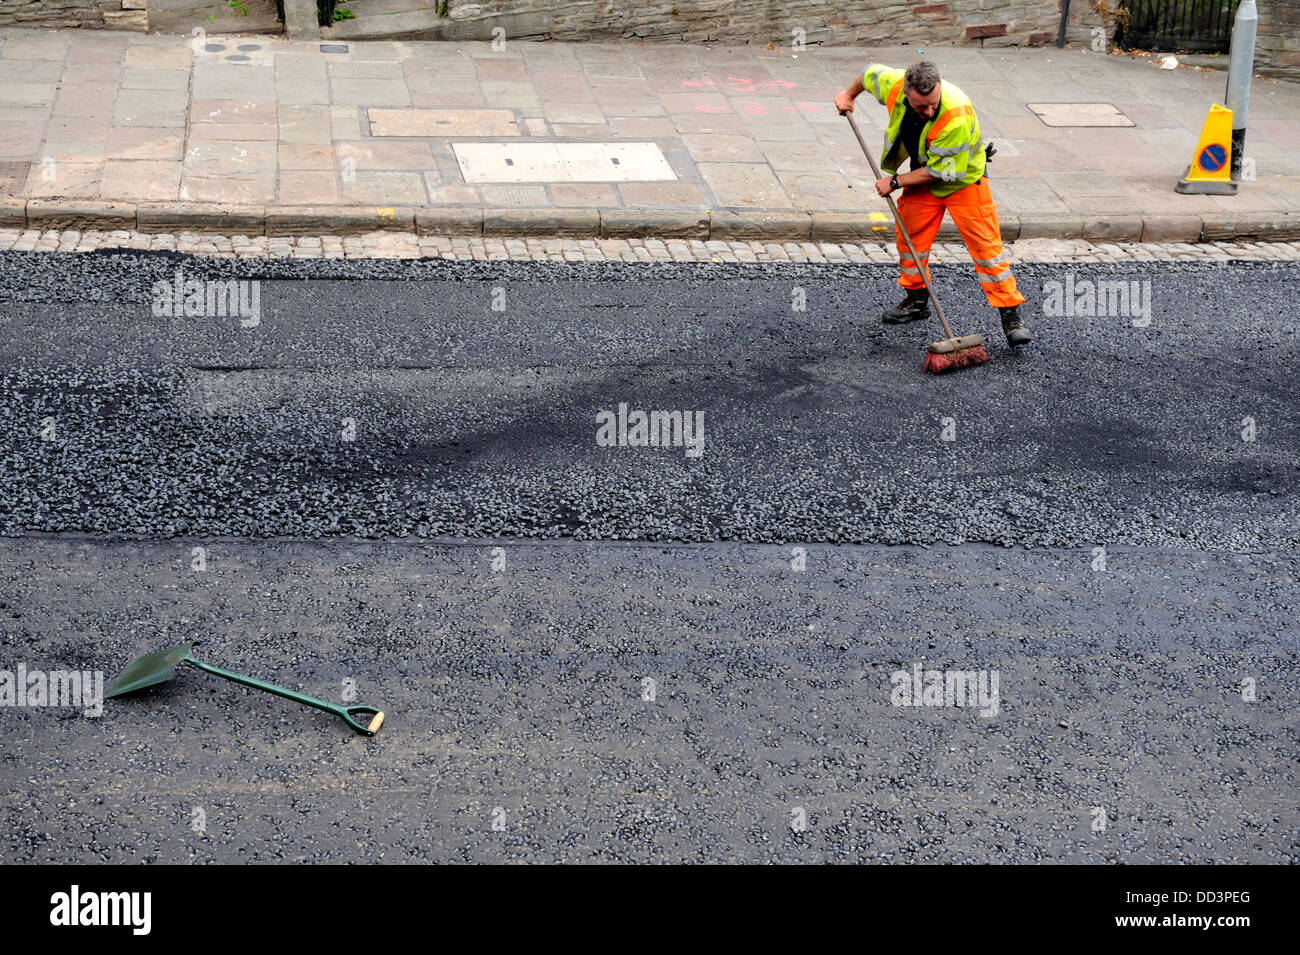 À l'aide d'asphalte Workman balai se propager au cours de réasphaltage Banque D'Images